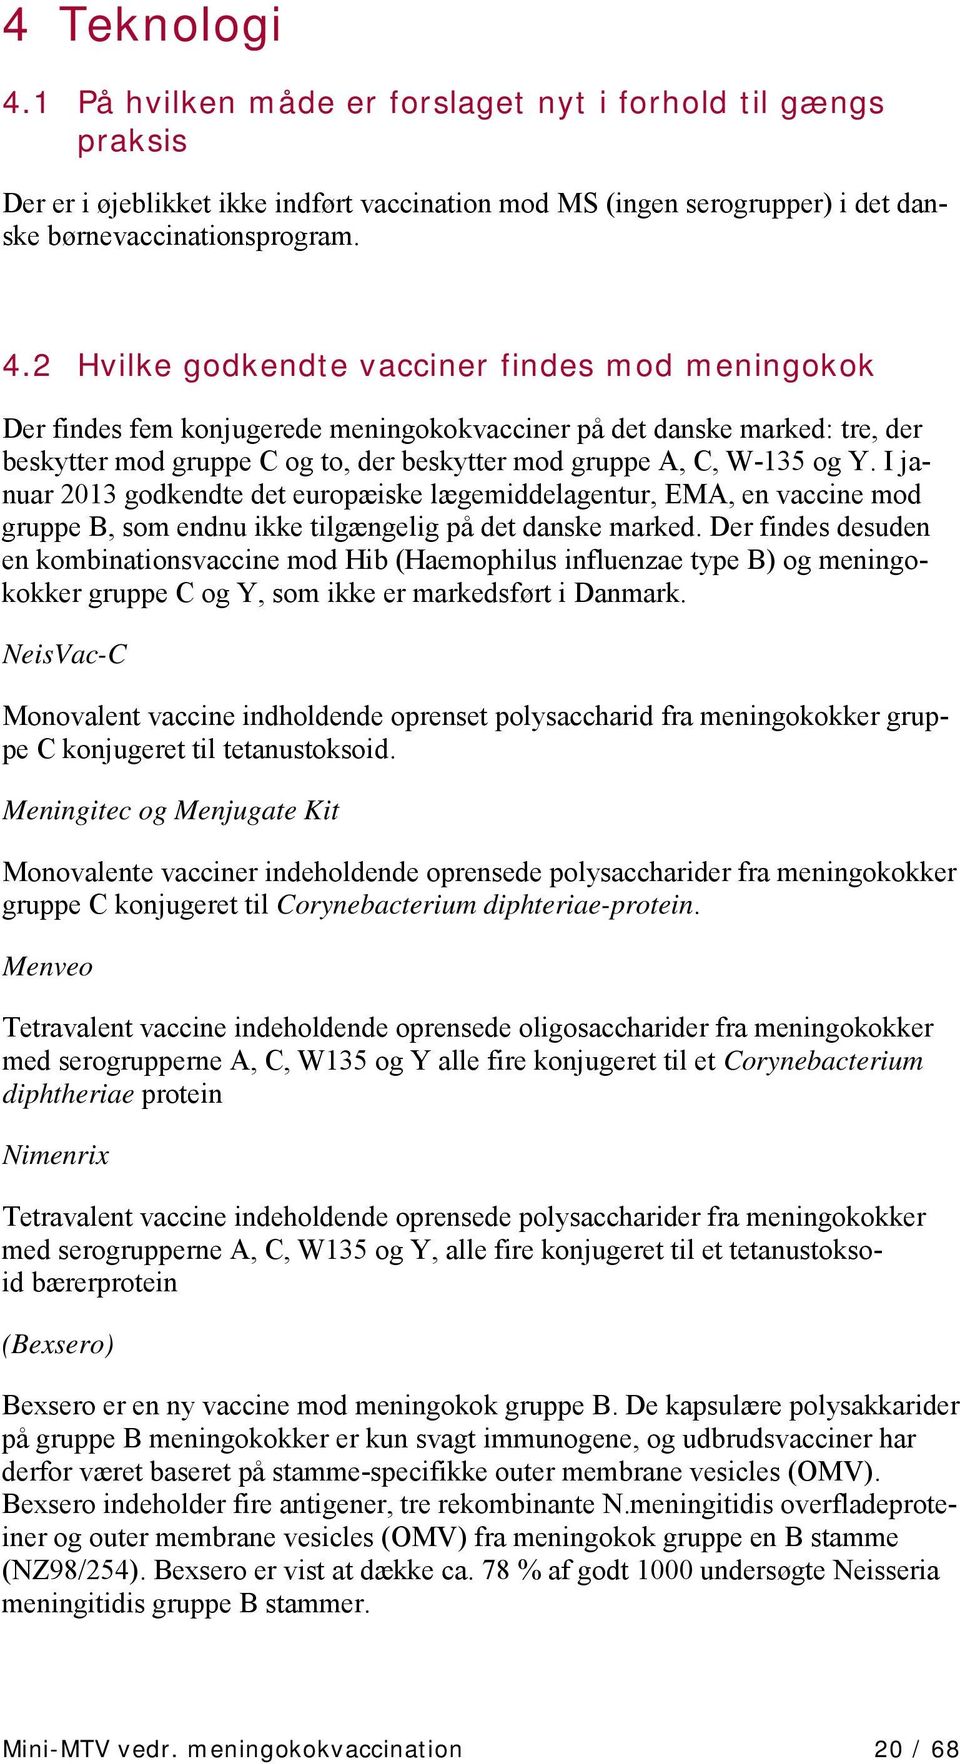 2 Hvilke godkendte vacciner findes mod meningokok Der findes fem konjugerede meningokokvacciner på det danske marked: tre, der beskytter mod gruppe C og to, der beskytter mod gruppe A, C, W-135 og Y.